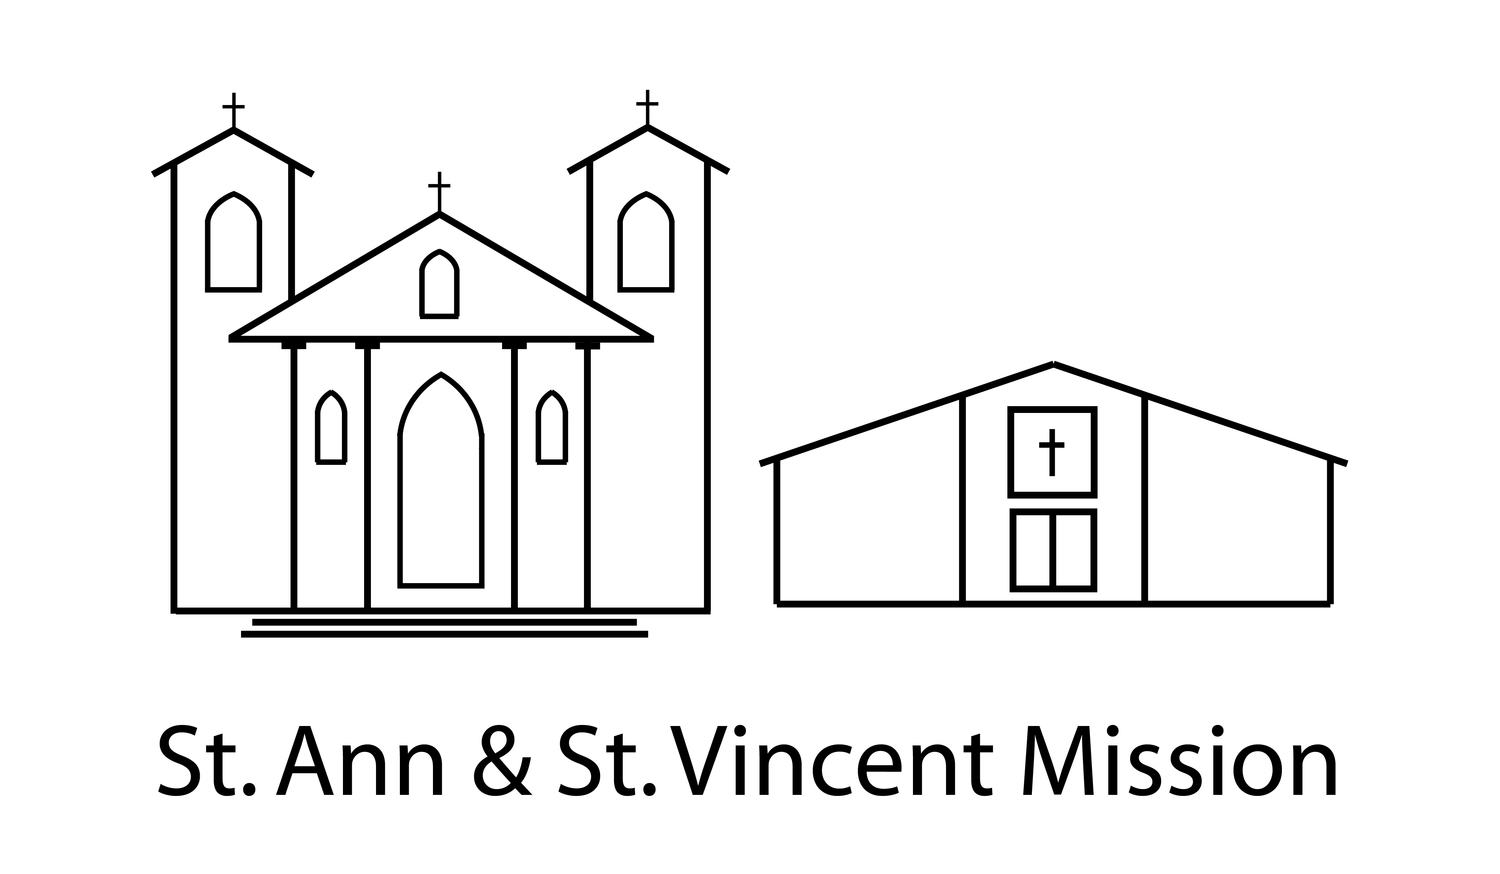 ST. ANN & ST. VINCENT